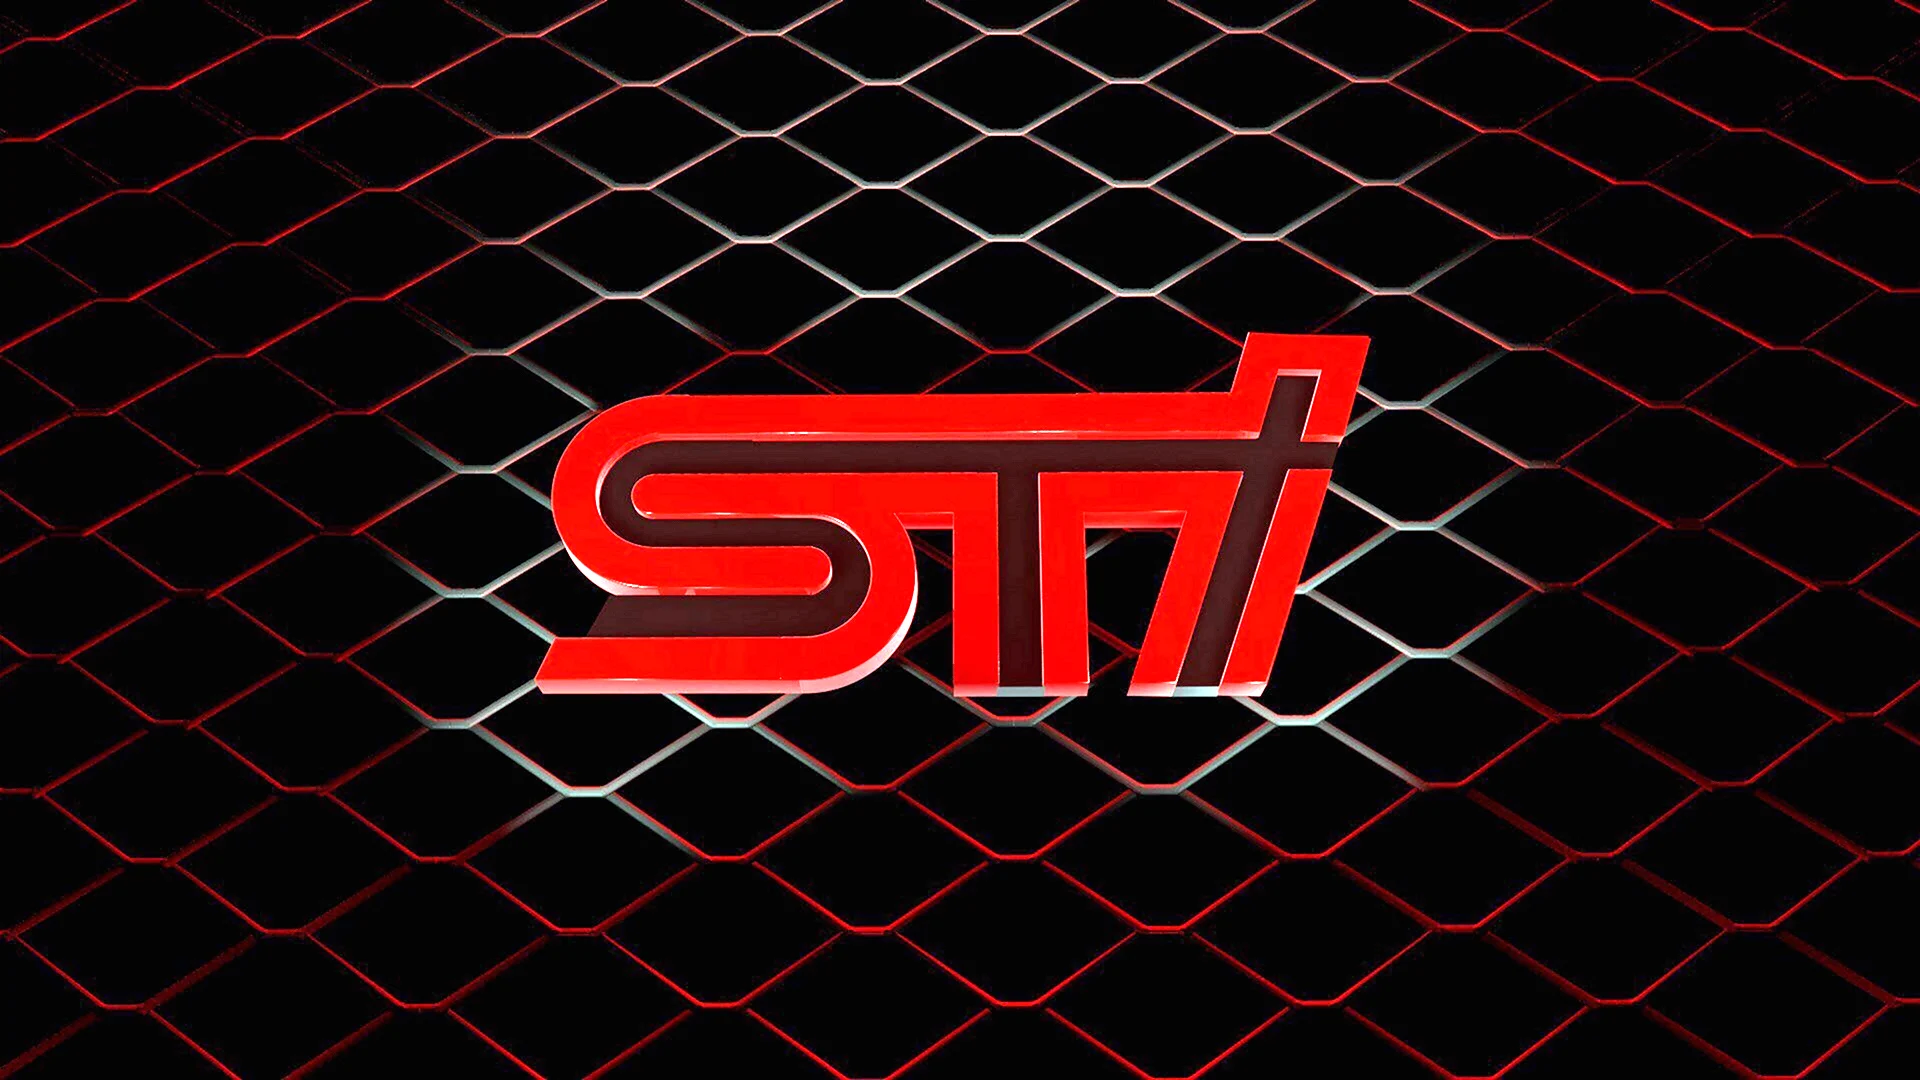 Subaru STI logo